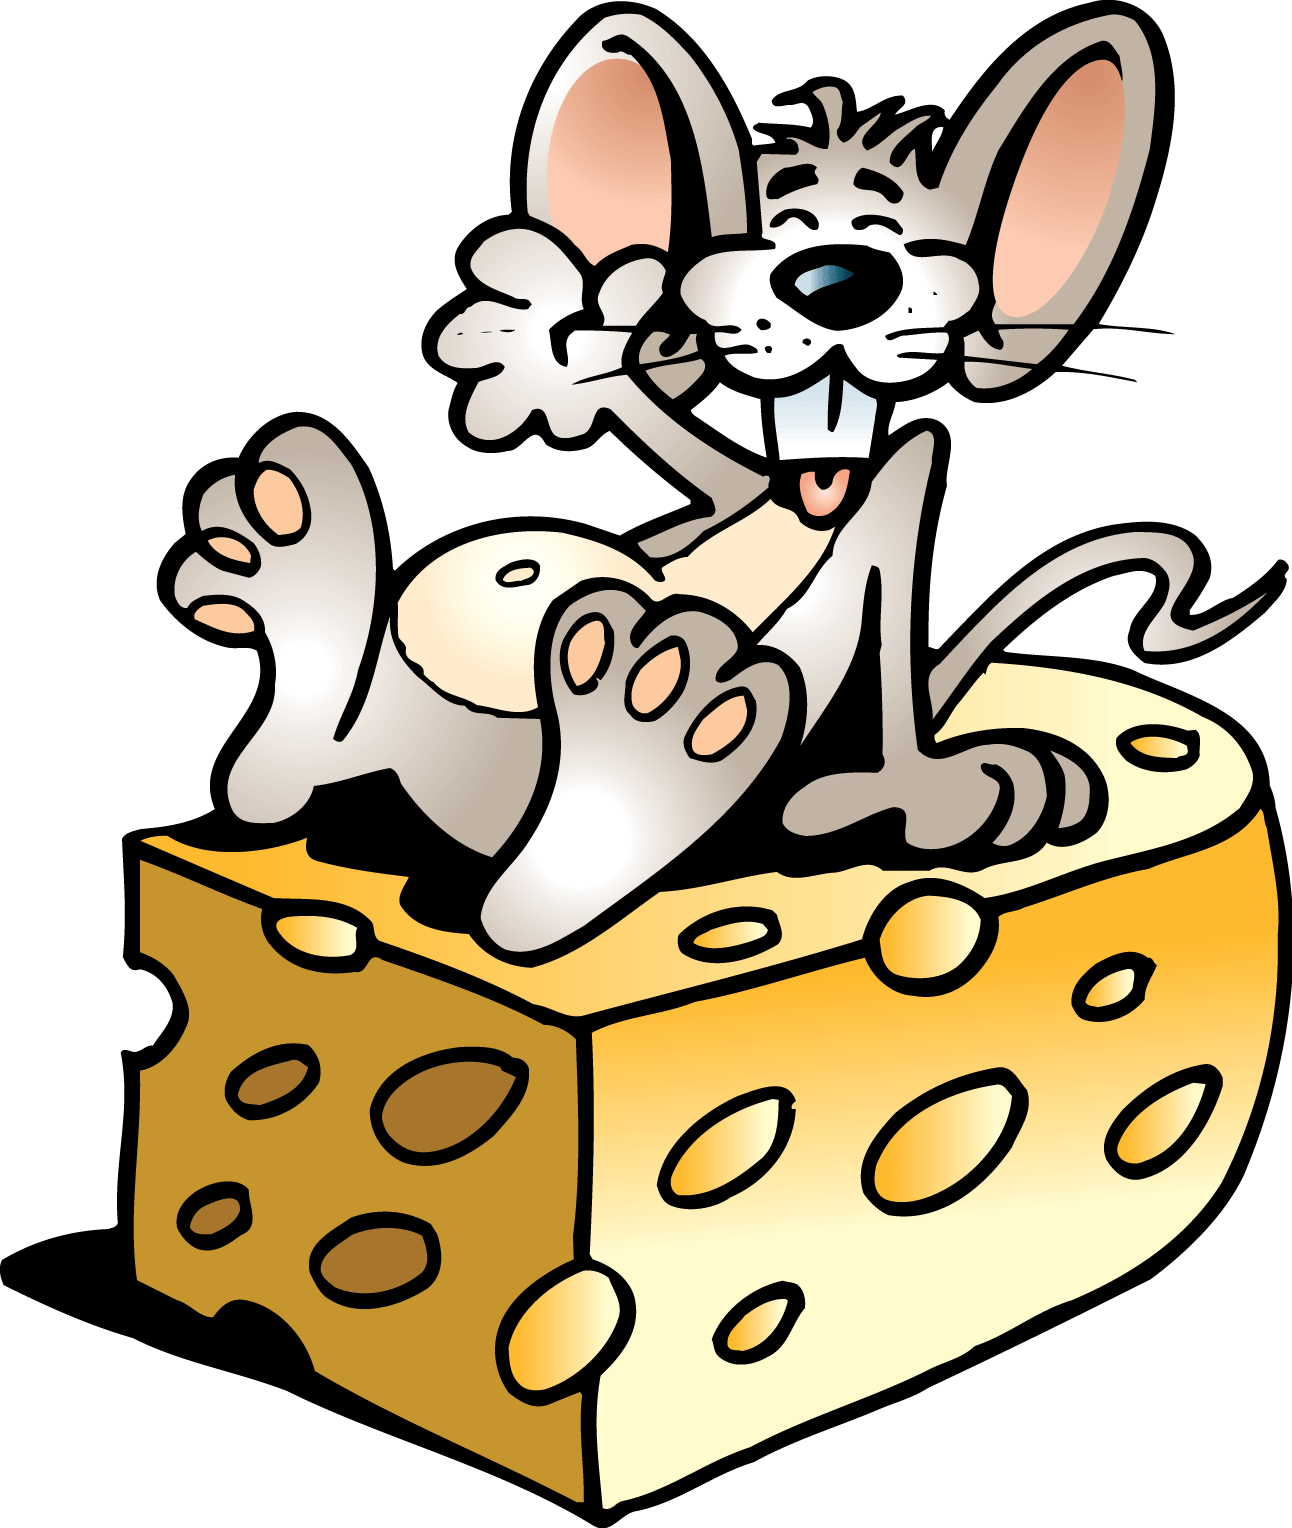 Про мышей и сыр. Мышонок на сыре. Мышка с сыром. Мышонок с сыром. Сыр мультяшный с мышкой.